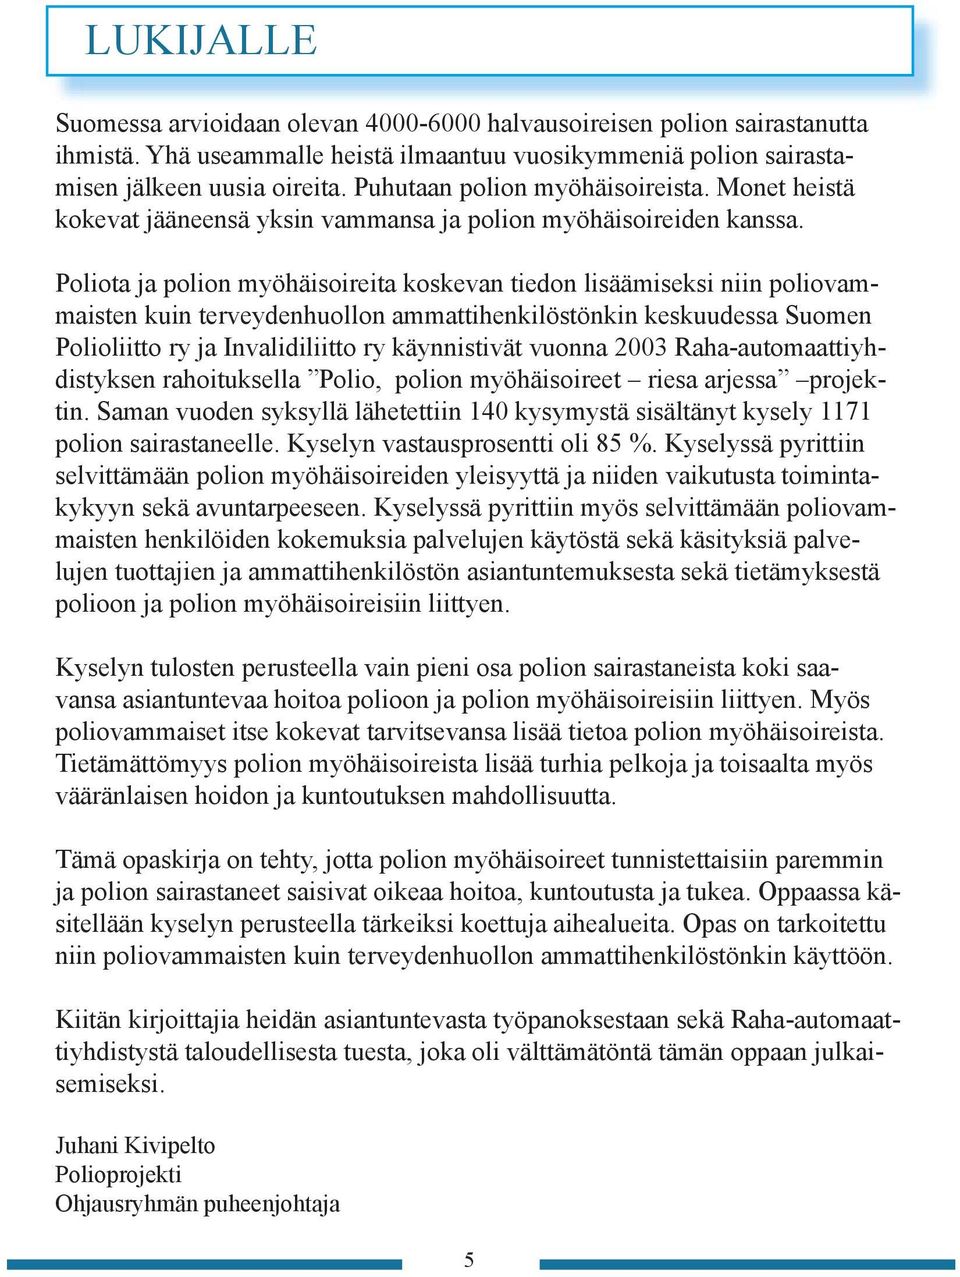 Poliota ja polion myöhäisoireita koskevan tiedon lisäämiseksi niin poliovammaisten kuin terveydenhuollon ammattihenkilöstönkin keskuudessa Suomen Polioliitto ry ja Invalidiliitto ry käynnistivät